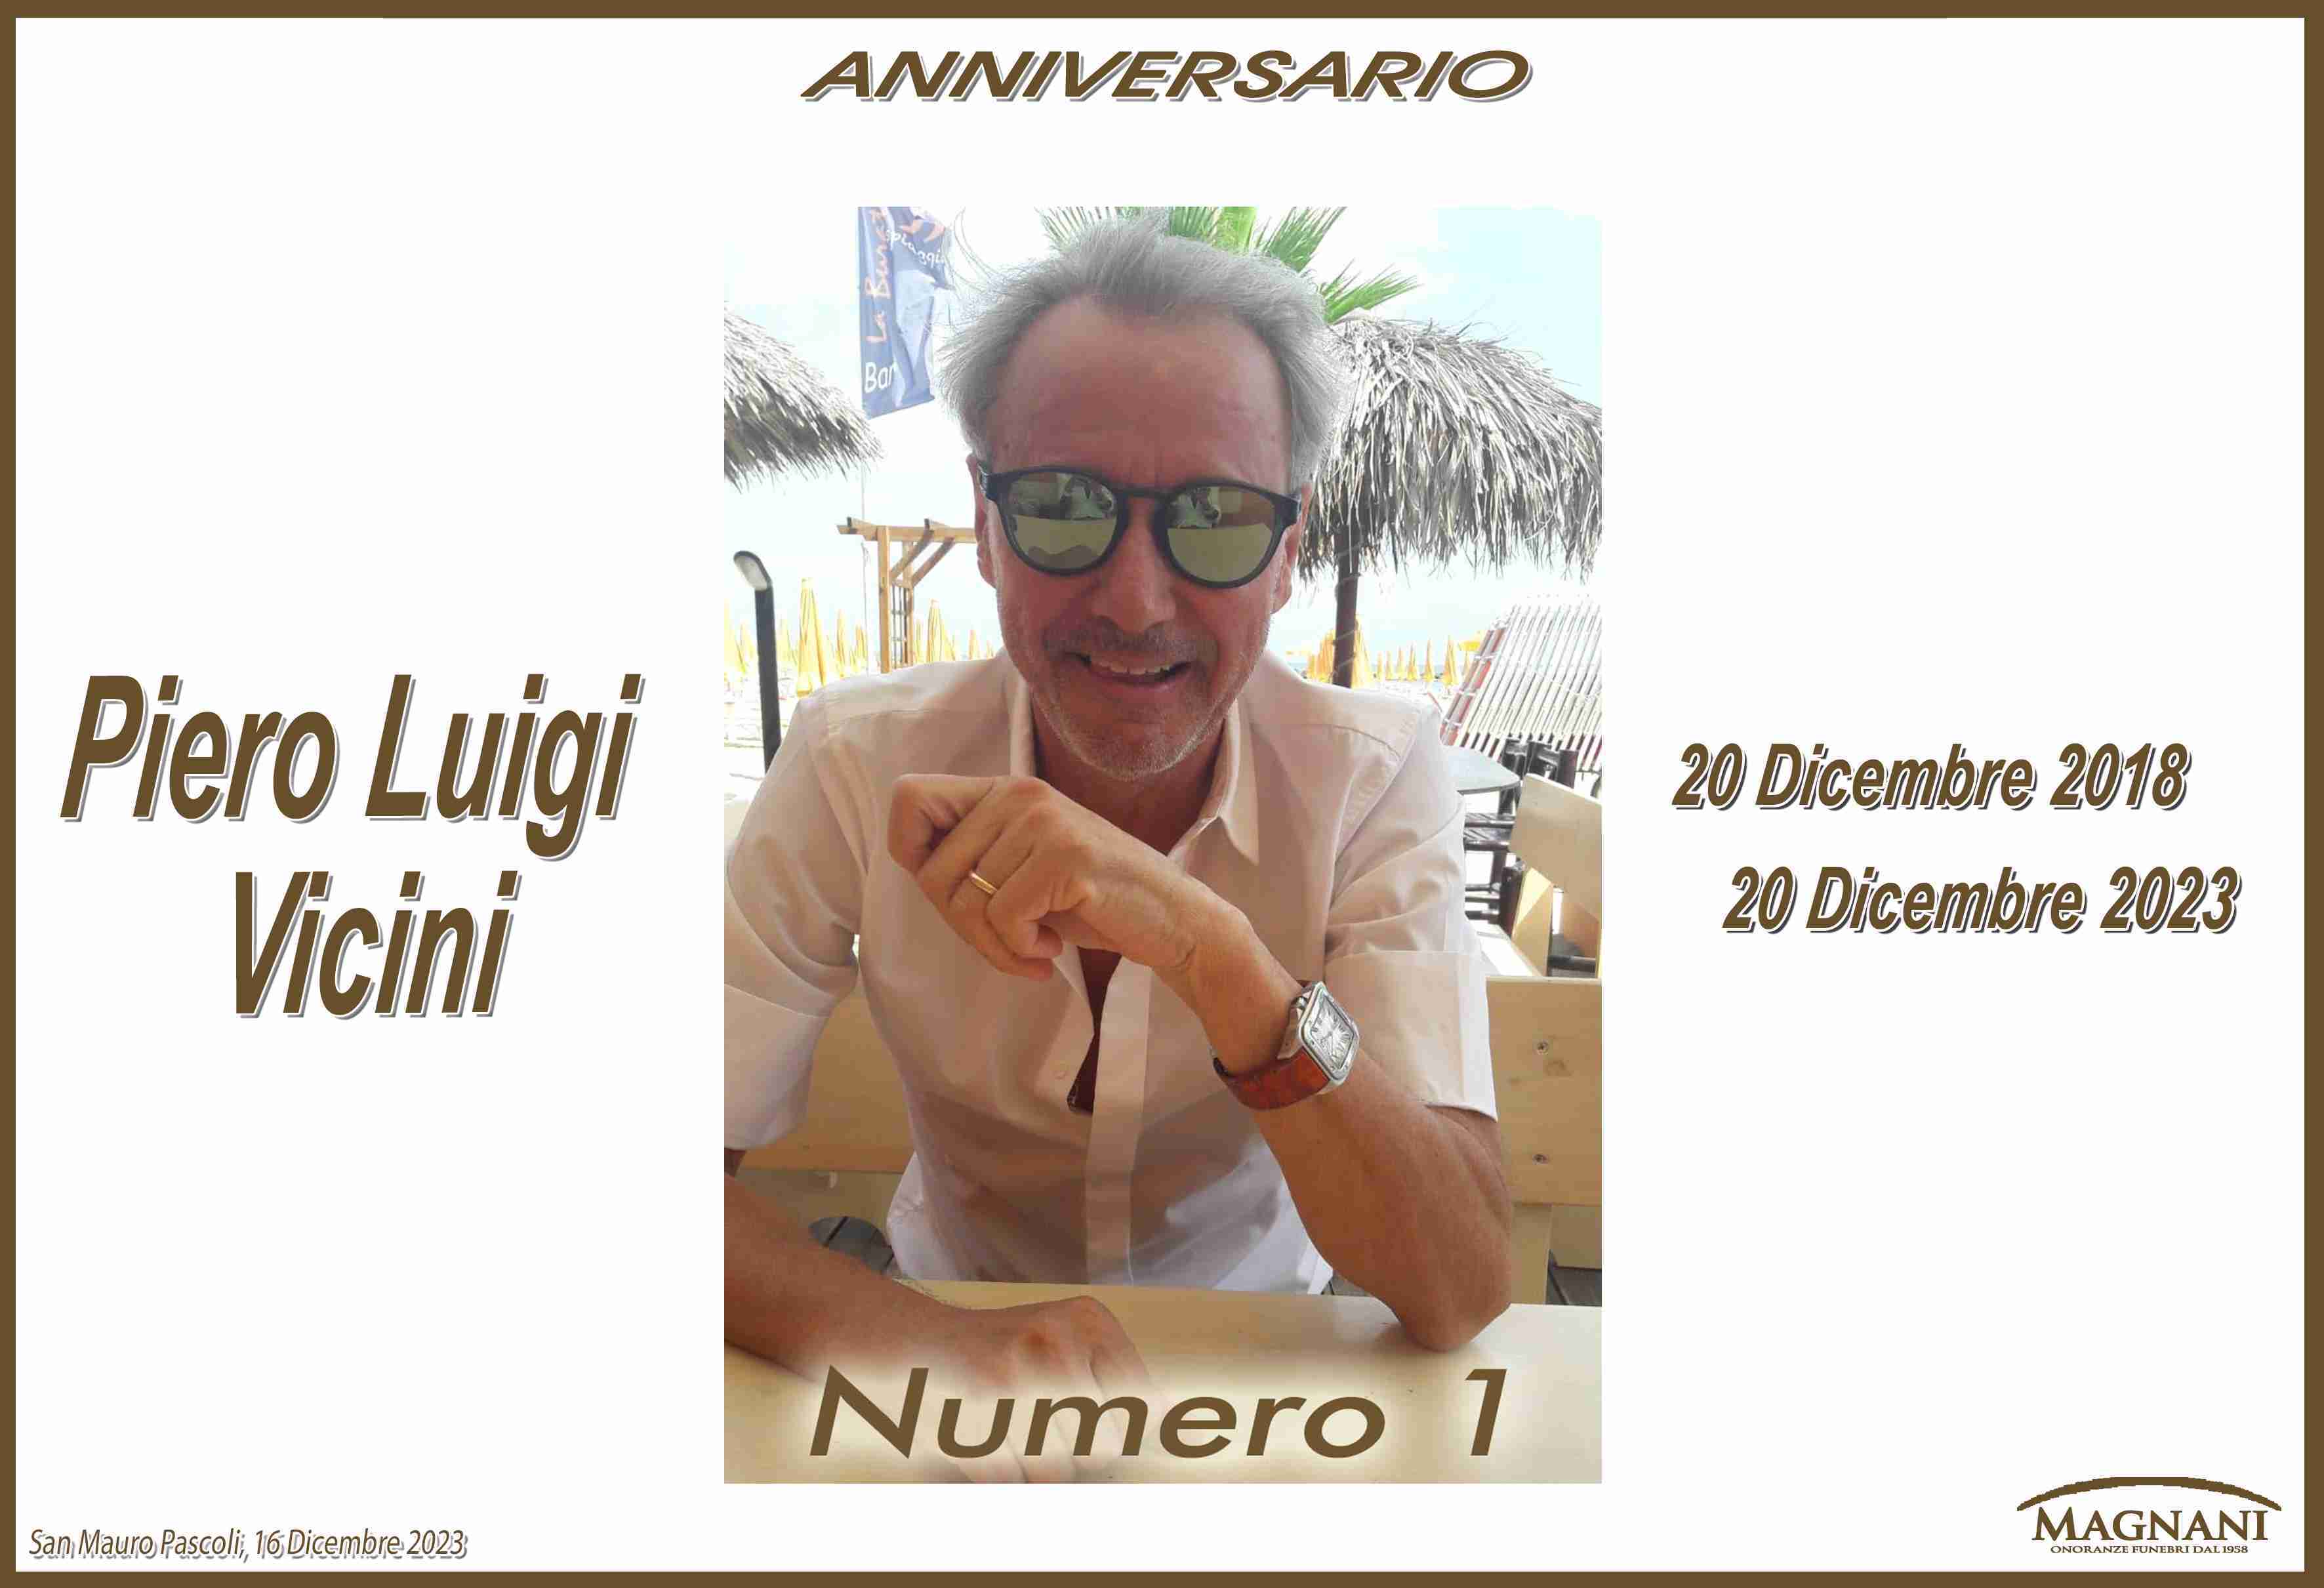 Piero Luigi Vicini